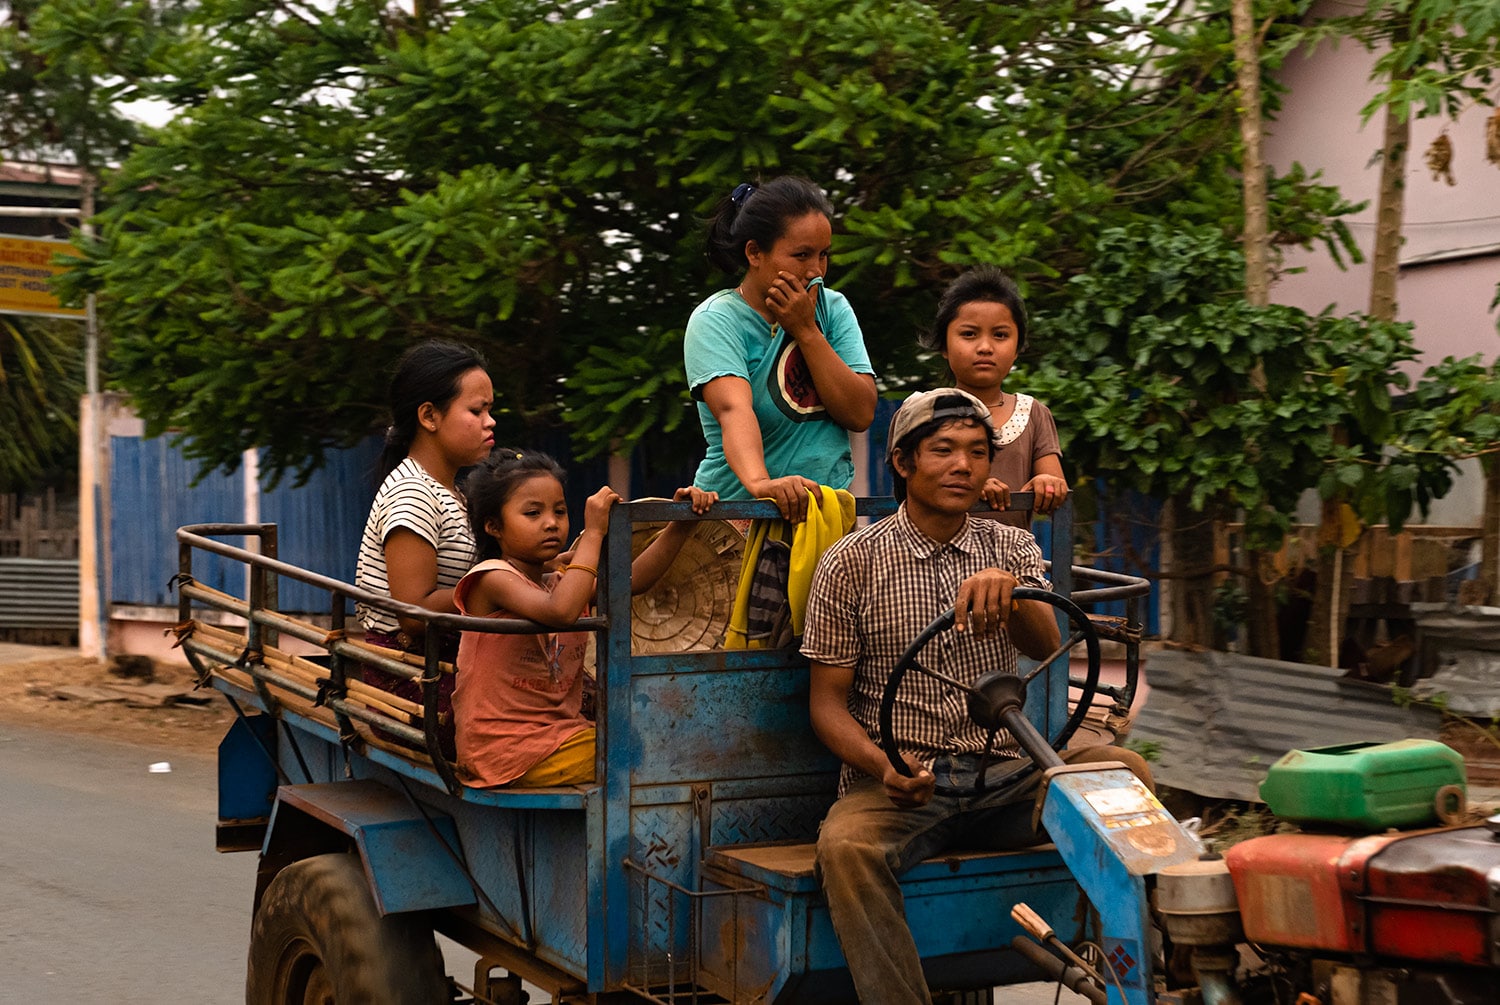 Famille de laotiens avant notre grand retour de voyage à cause de la crise du Coronavirus